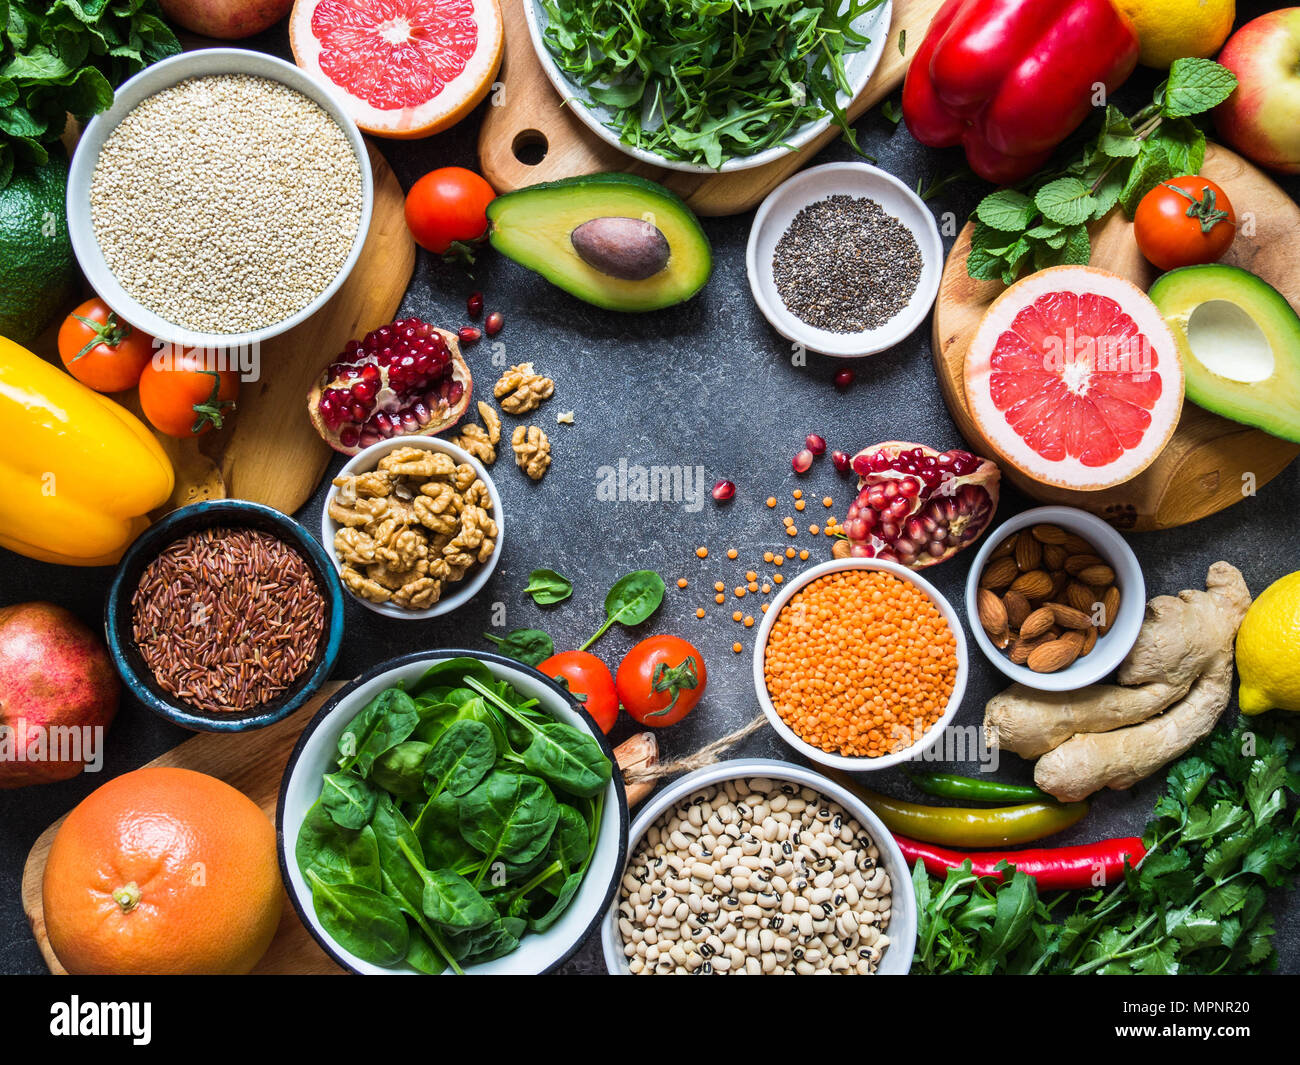 Freschi ingredienti grezzi per cucina salutare. Ortaggi e legumi, frutta, semi, cereali, fagioli, spezie, superfoods, erbe aromatiche. Pulire il cibo. Vista dall'alto. Foto Stock